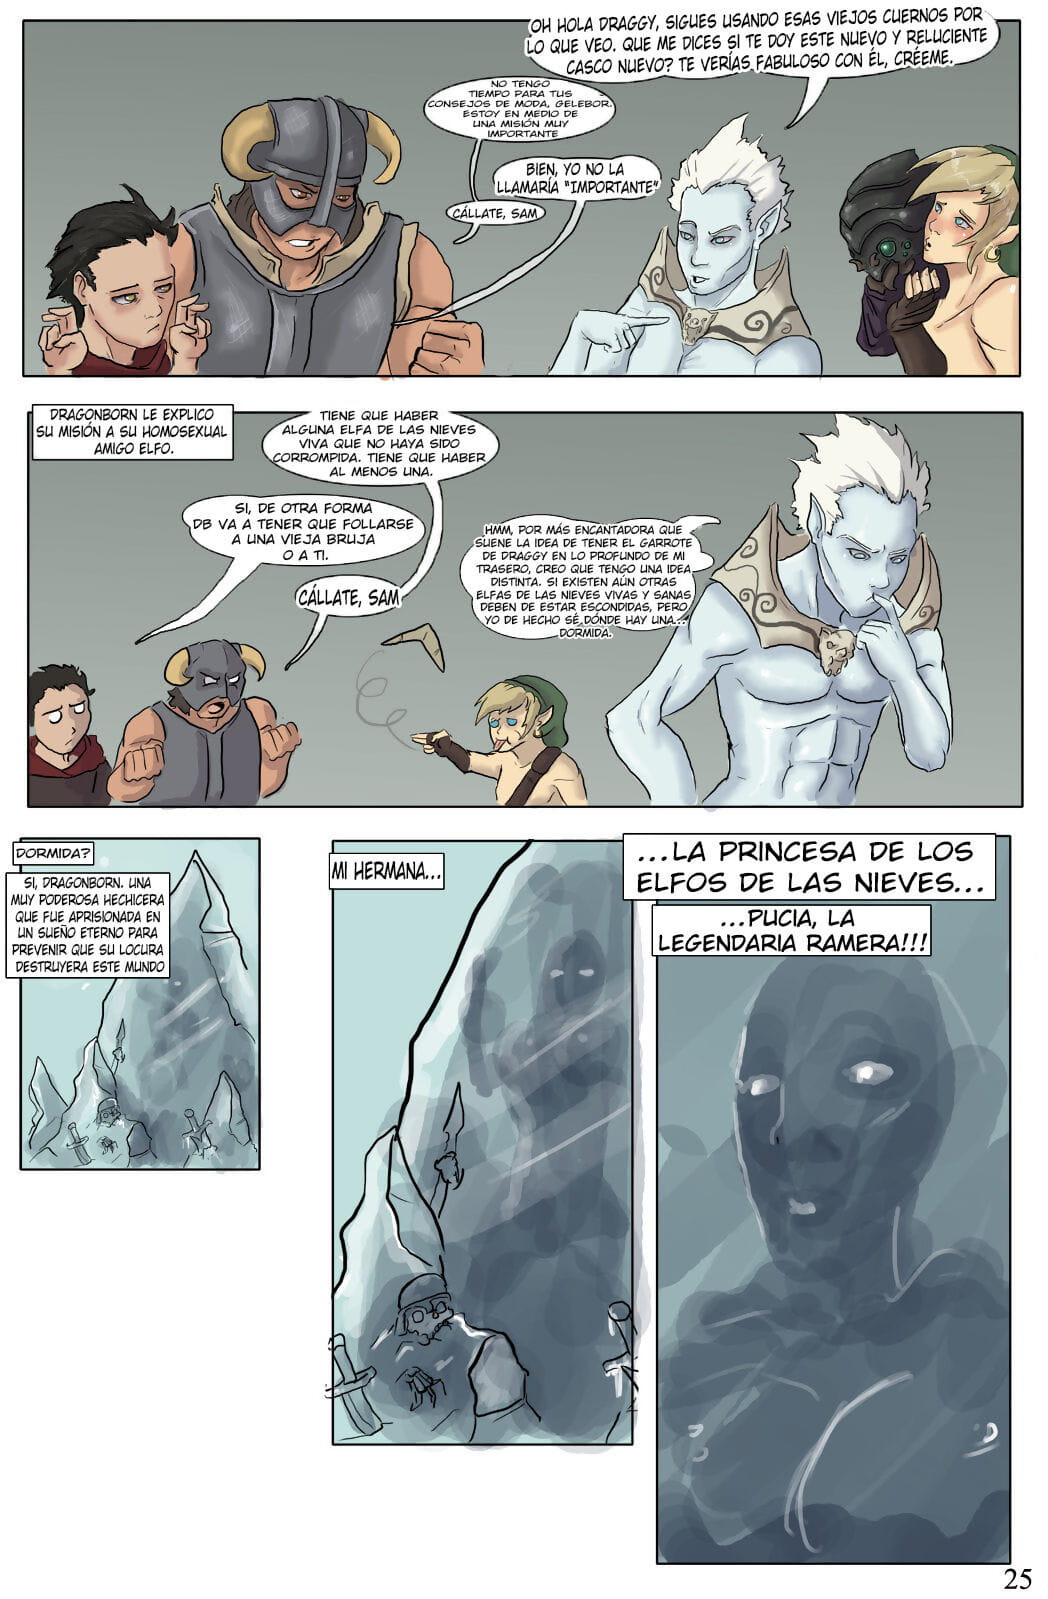 el devenir de dragonborn Teil 2 page 1